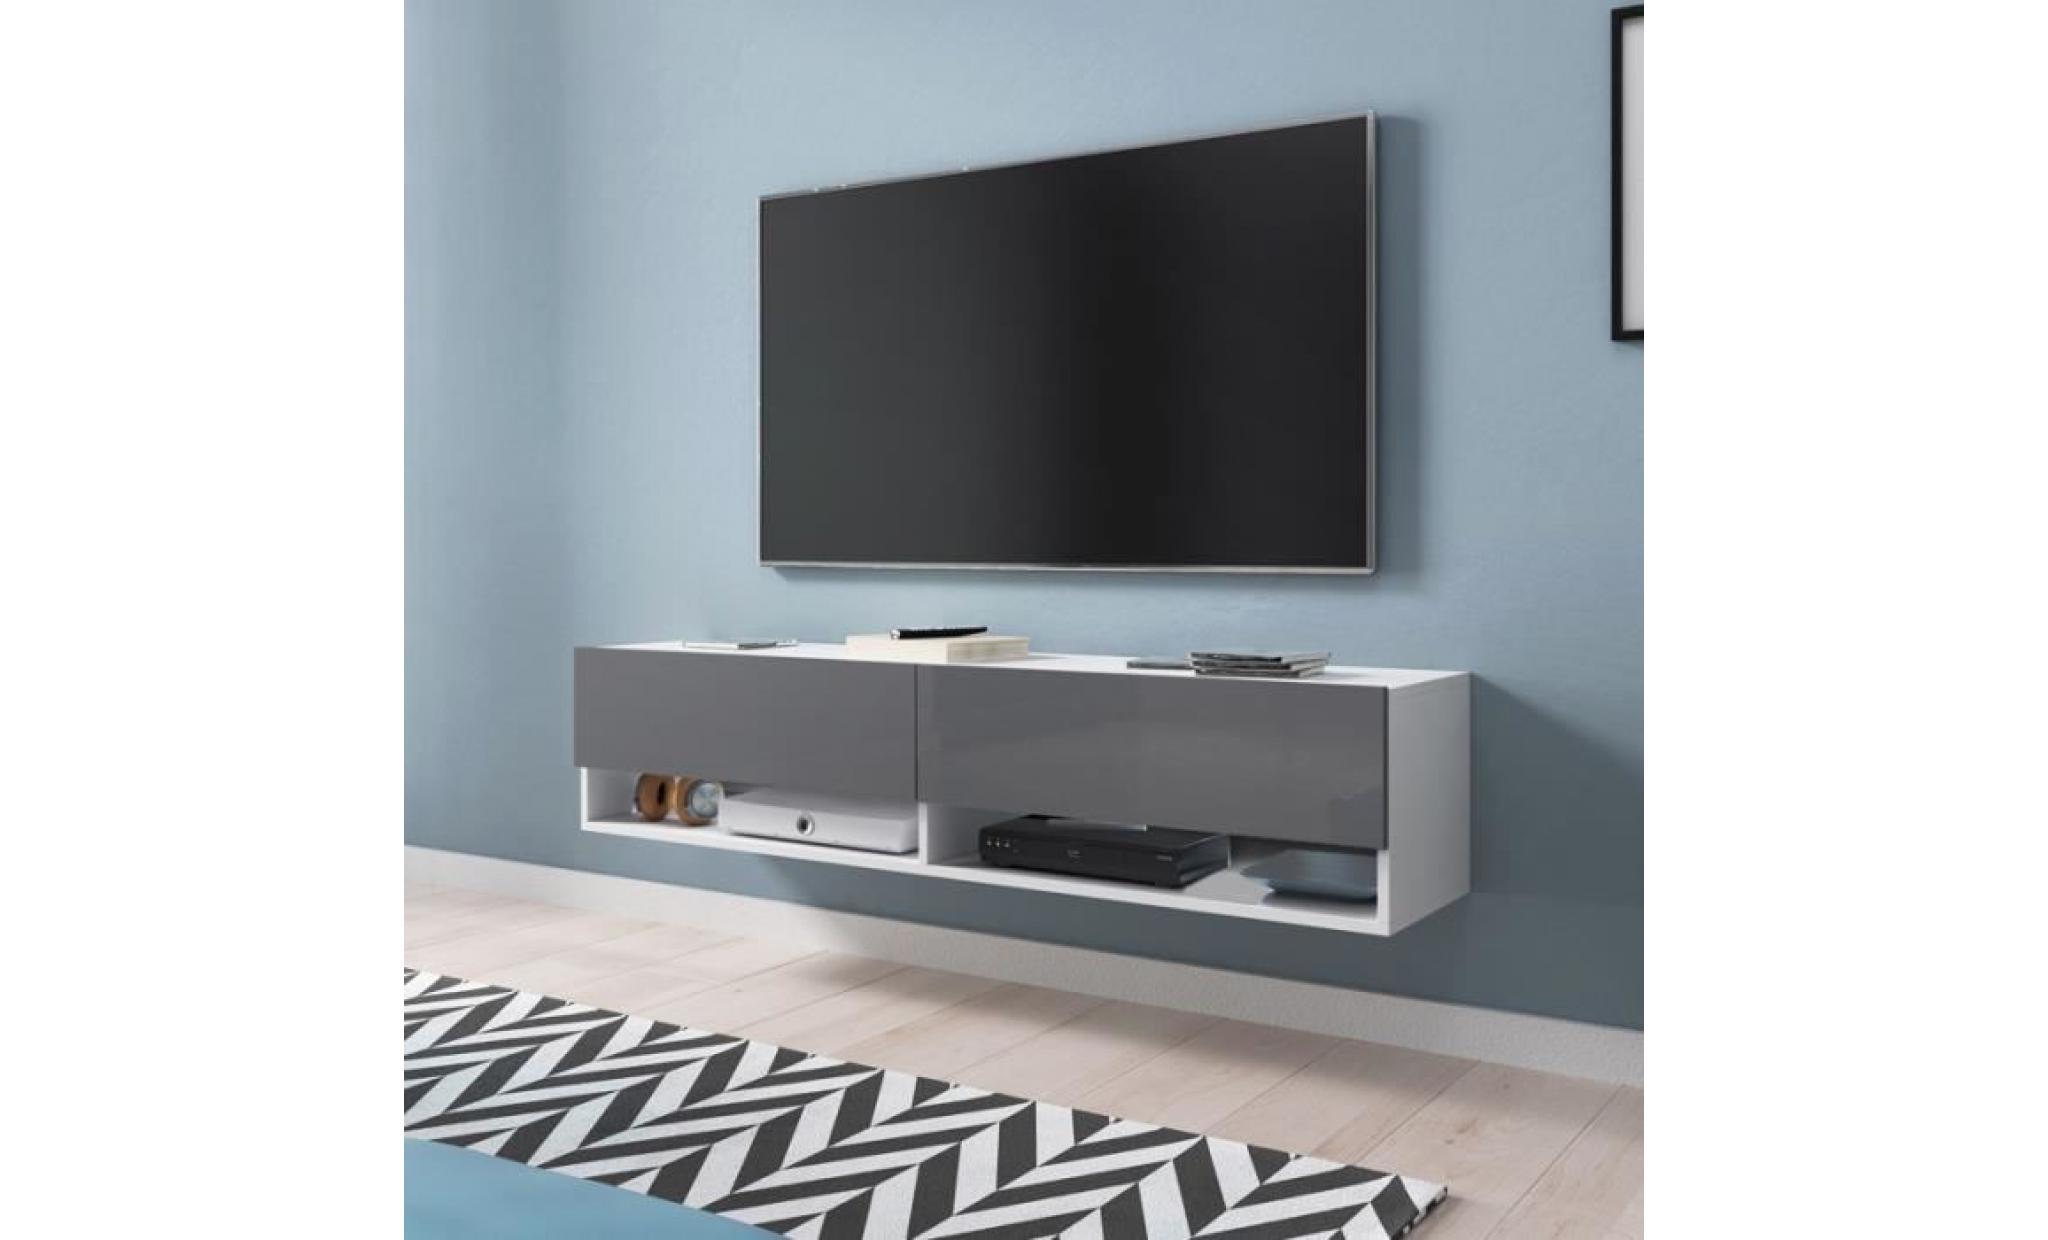 meuble tv / meuble de salon   wander   140 cm   blanc mat / gris brillant   sans led   2 niches ouvertes   style industriel